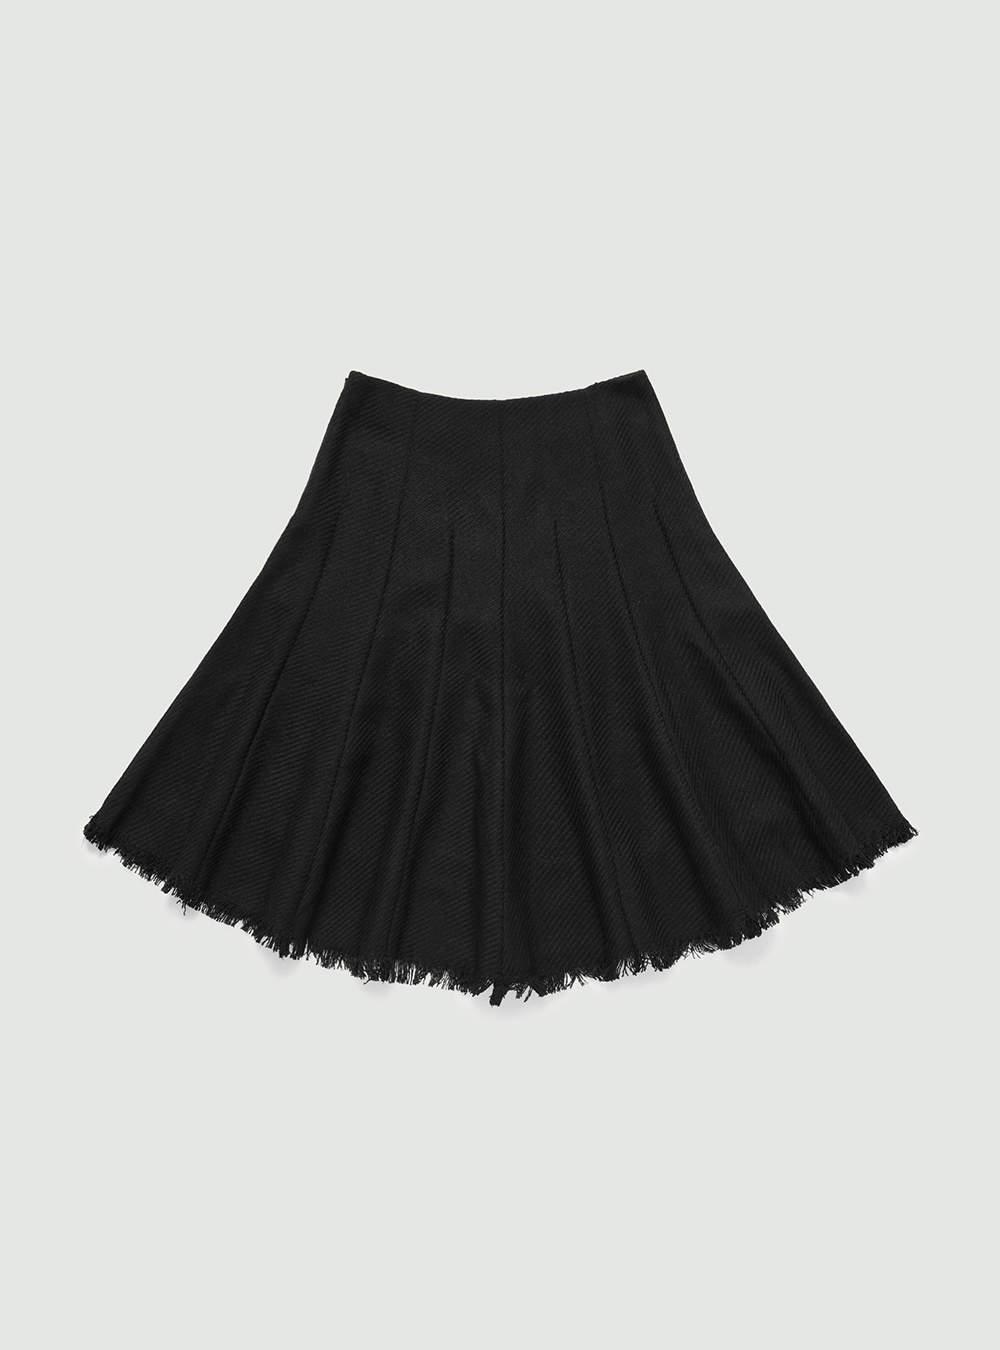 Classic wool fringe skirt. Black